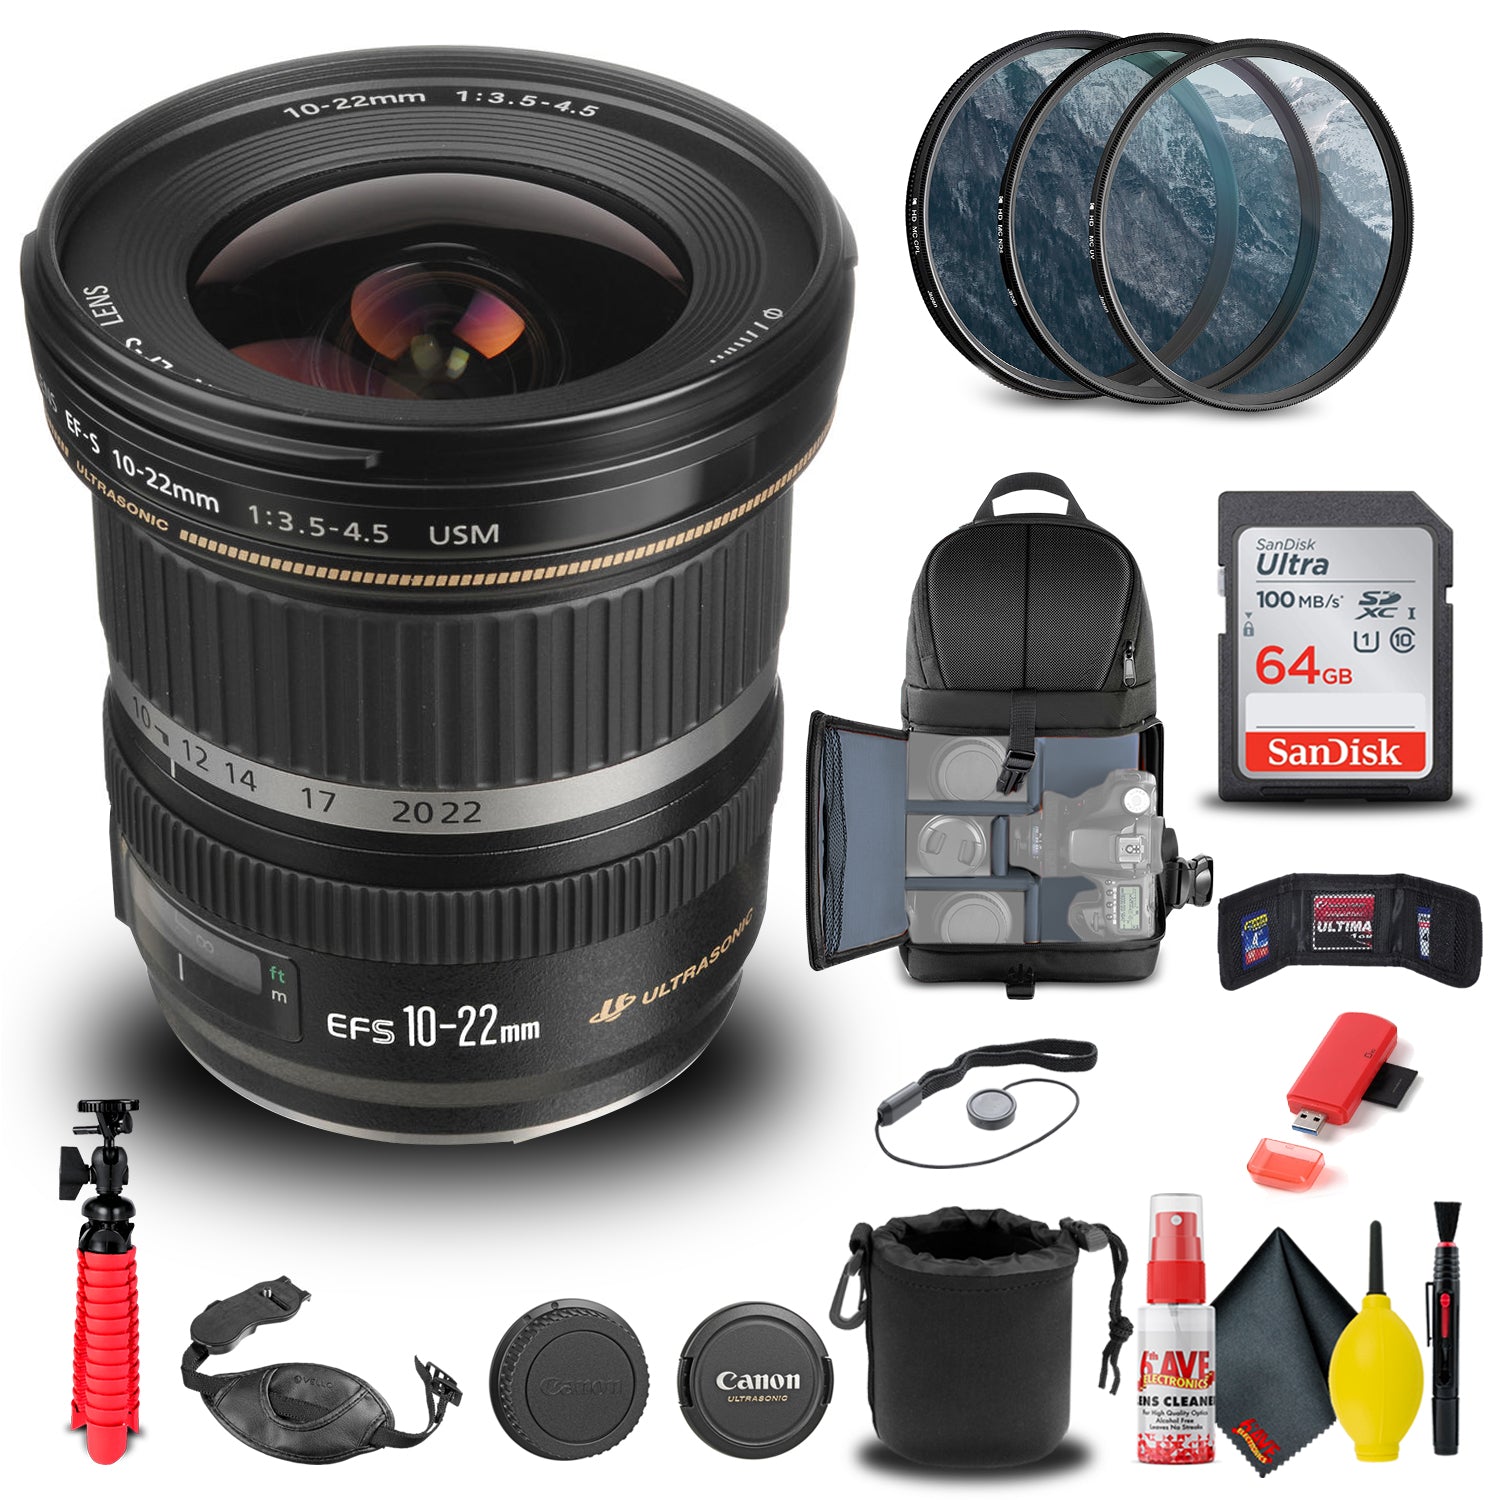 Canon EF-S 10-22mm f/3.5-4.5 USM Lens (9518A002) + Filter Kit + BackPack + More